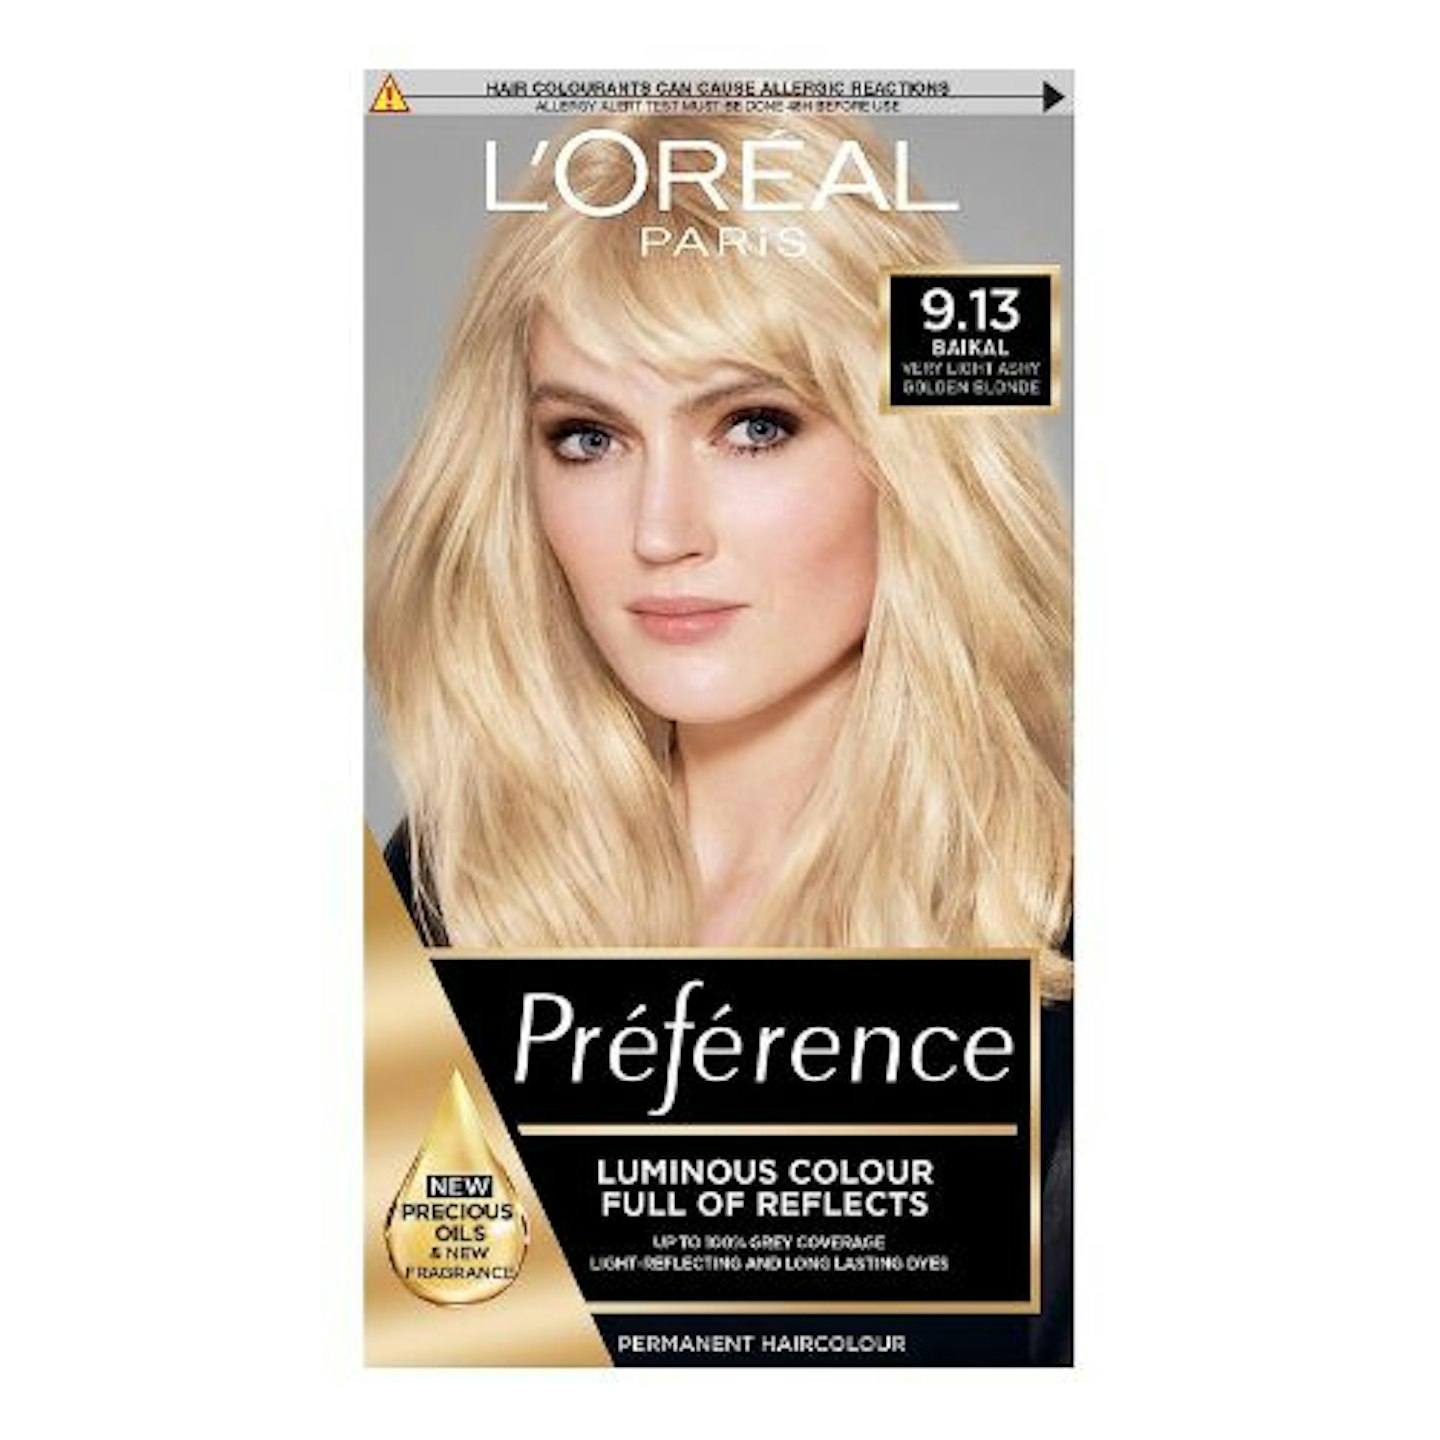 L'Oreal Preference Blonde Hair Dye (9.13 Baikal)